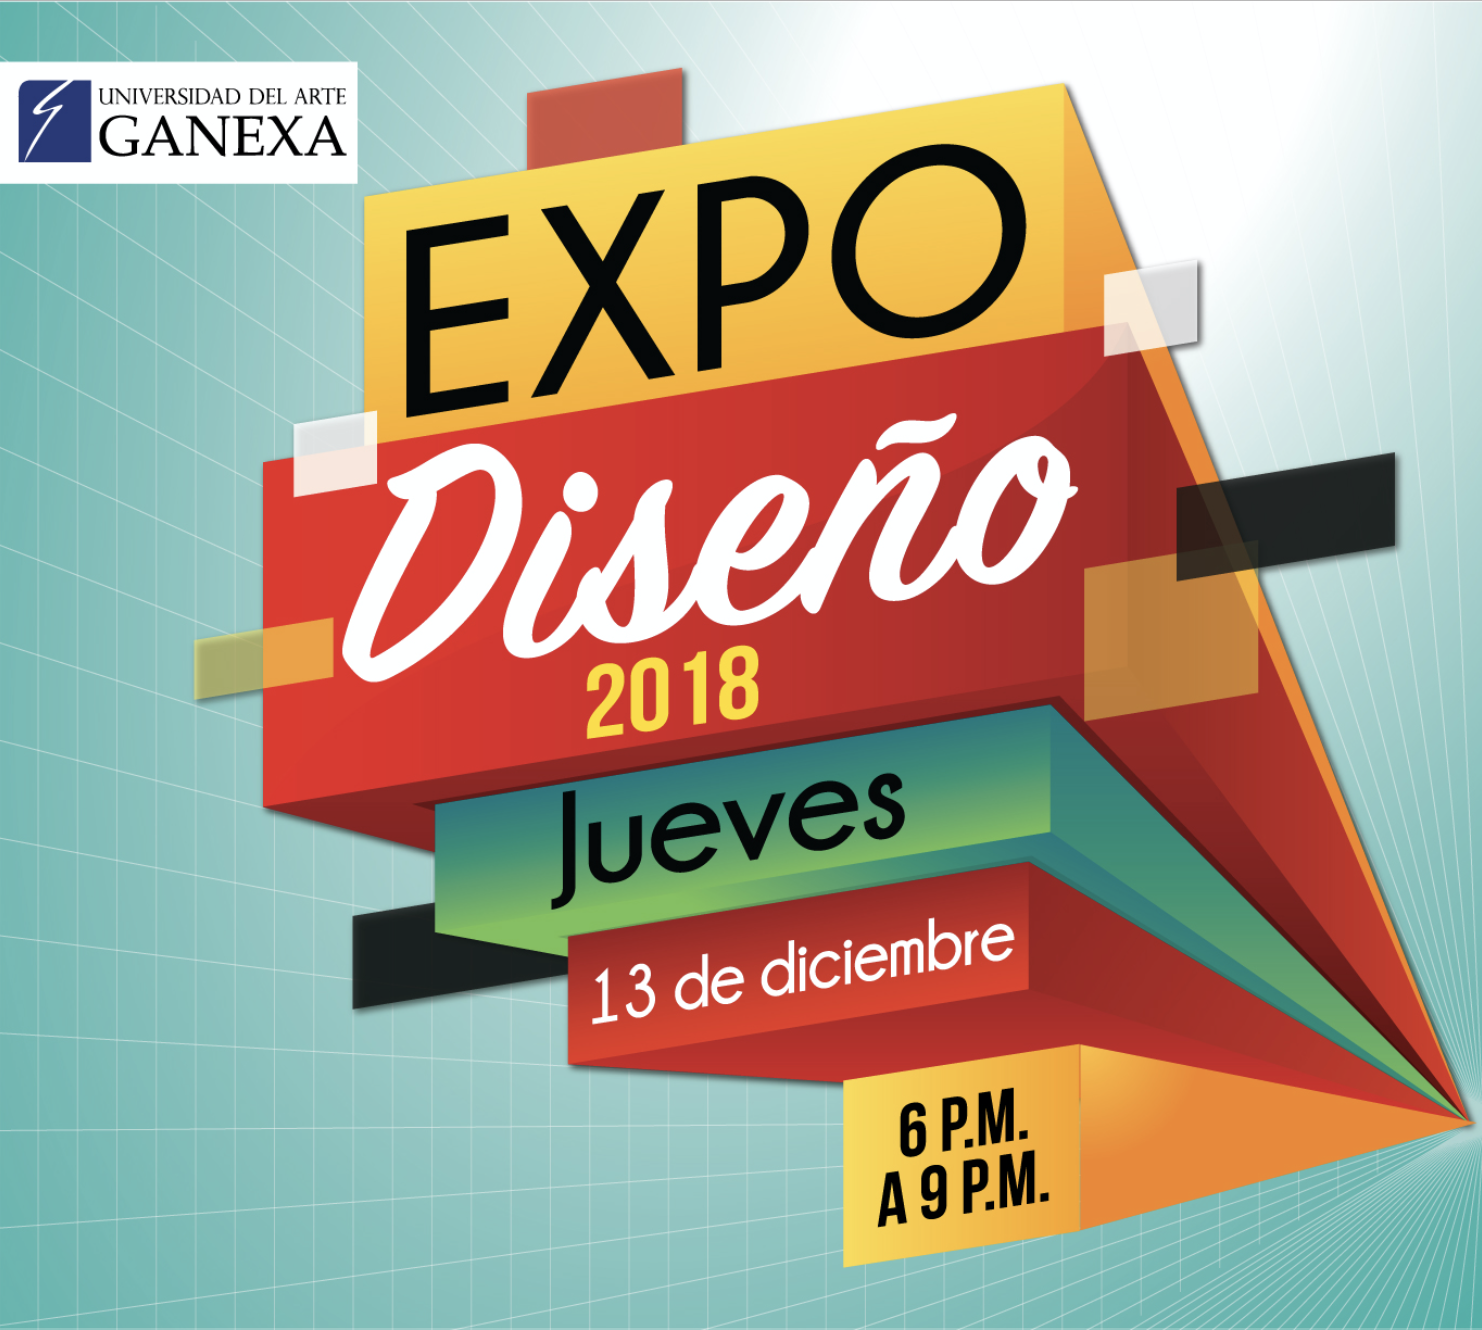 Expo Diseño 2018